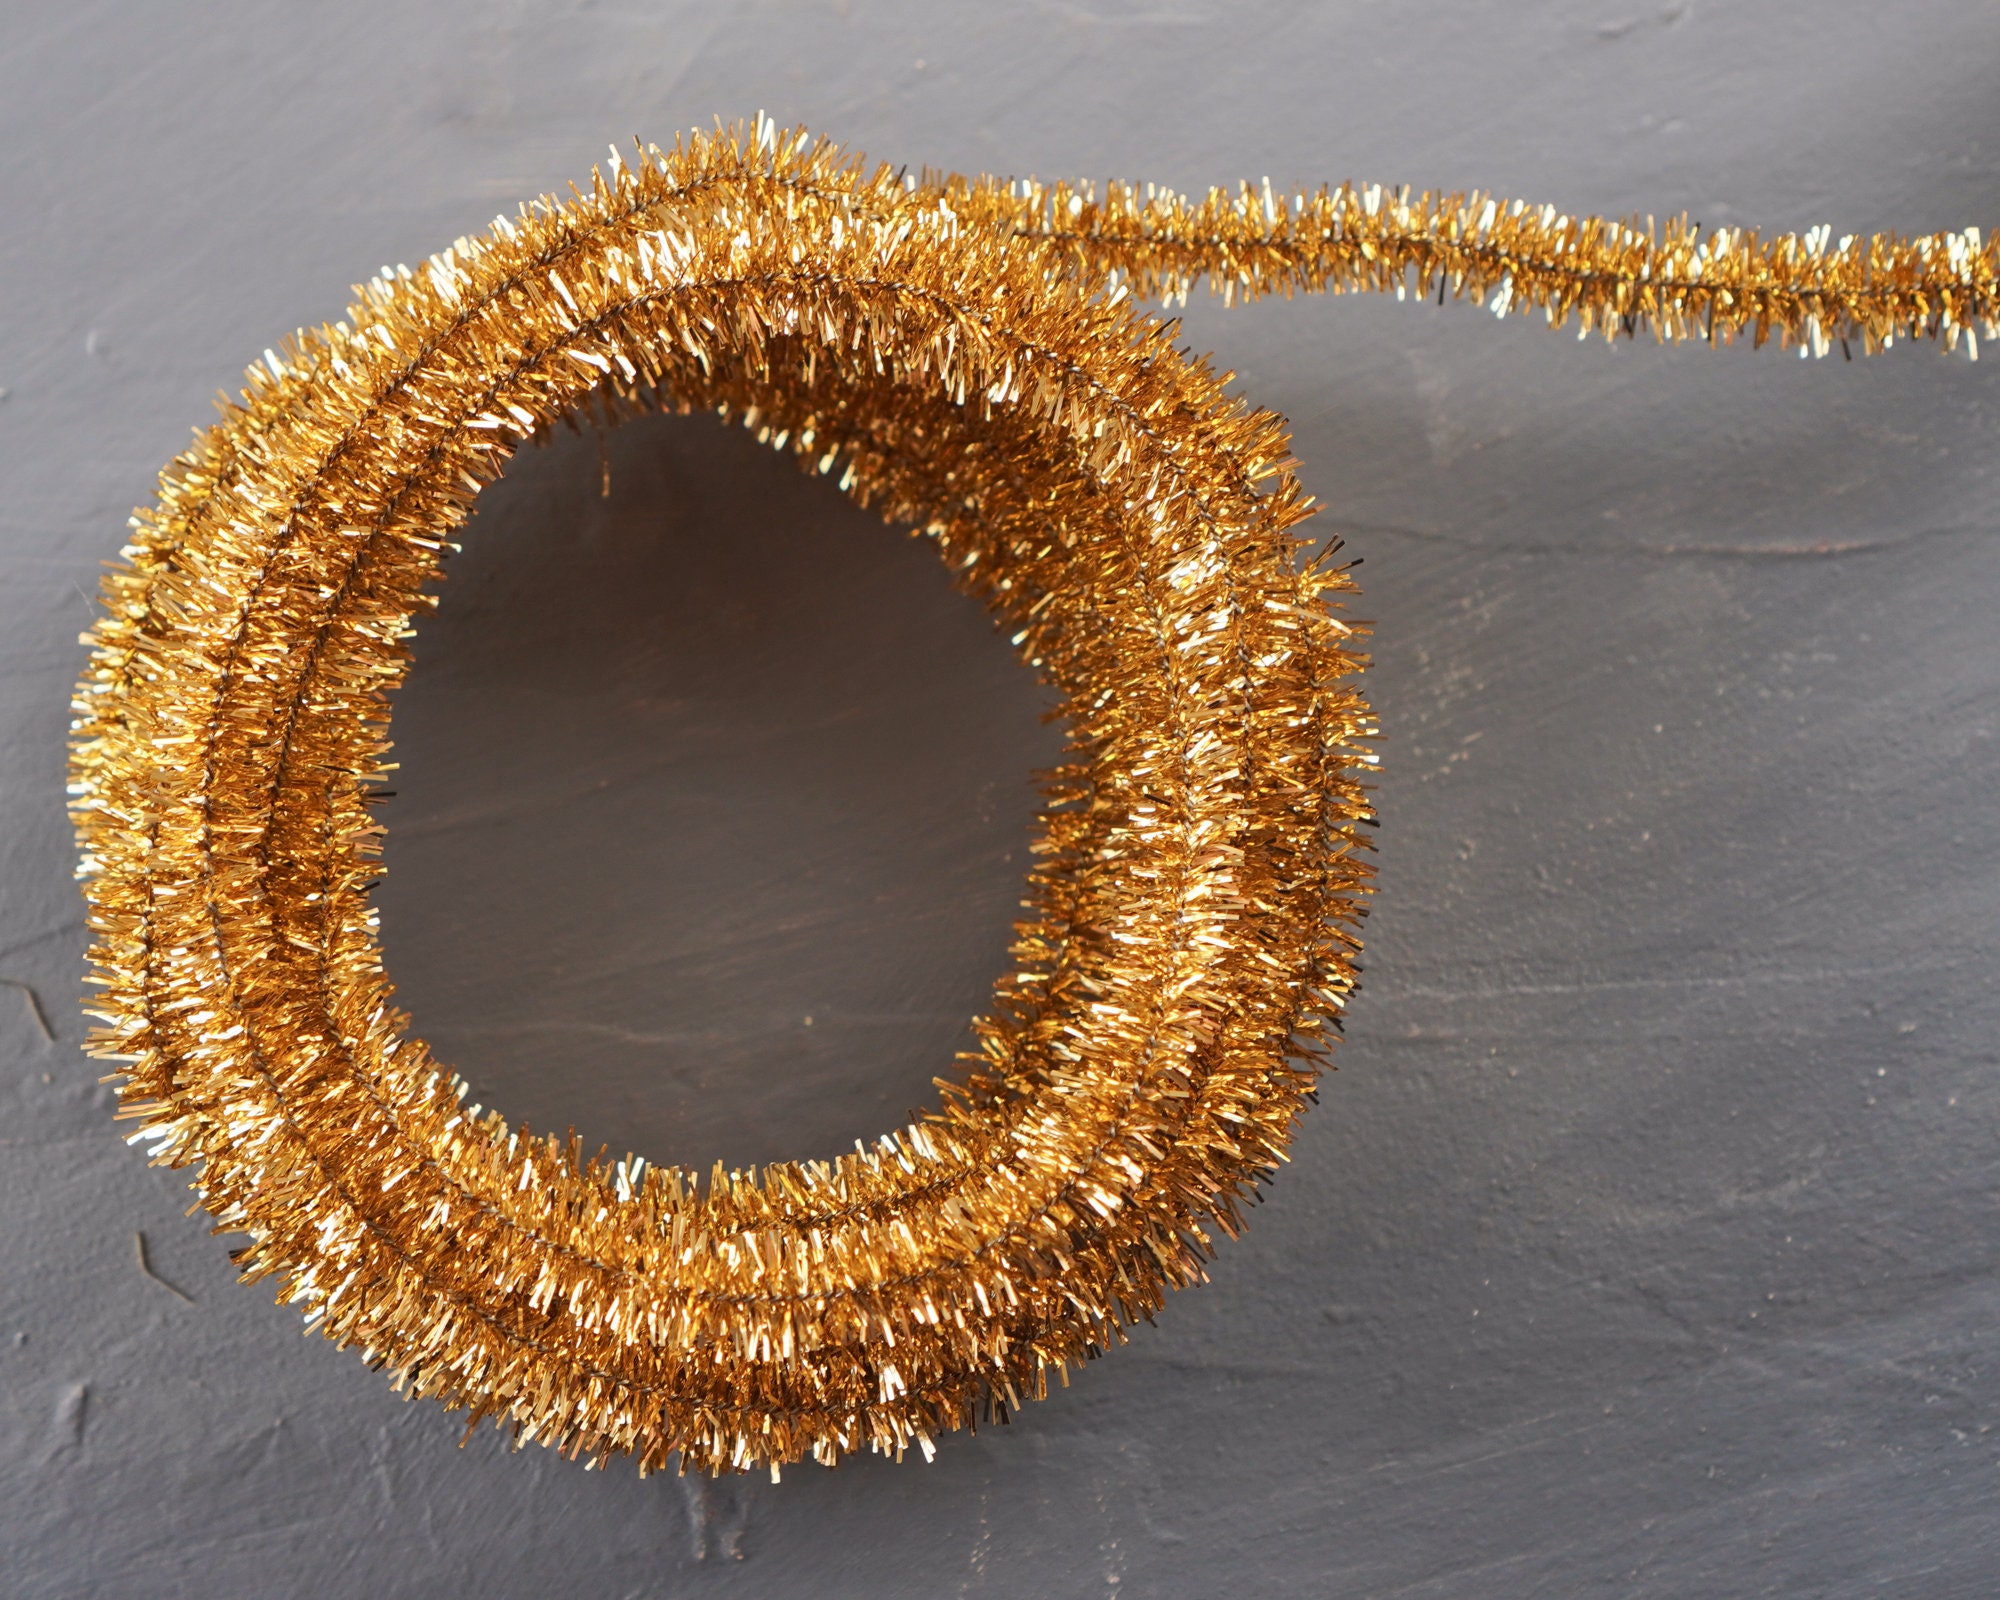 Gold Pipe Cleaner Roping - Wired Metallic Lurex Craft Trim, 3 Yds.